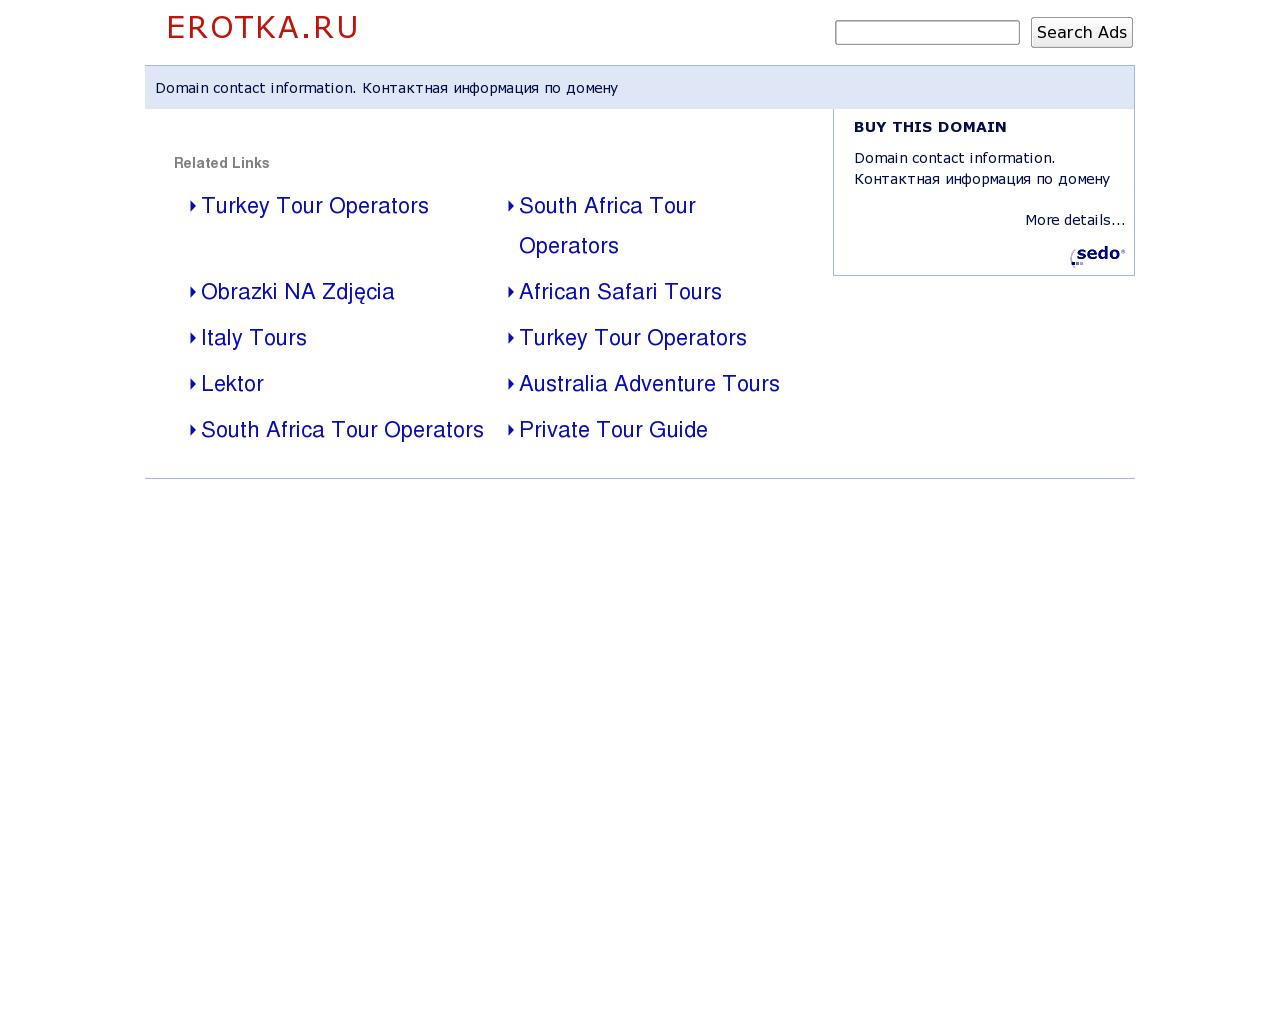 Изображение сайта erotka.ru в разрешении 1280x1024